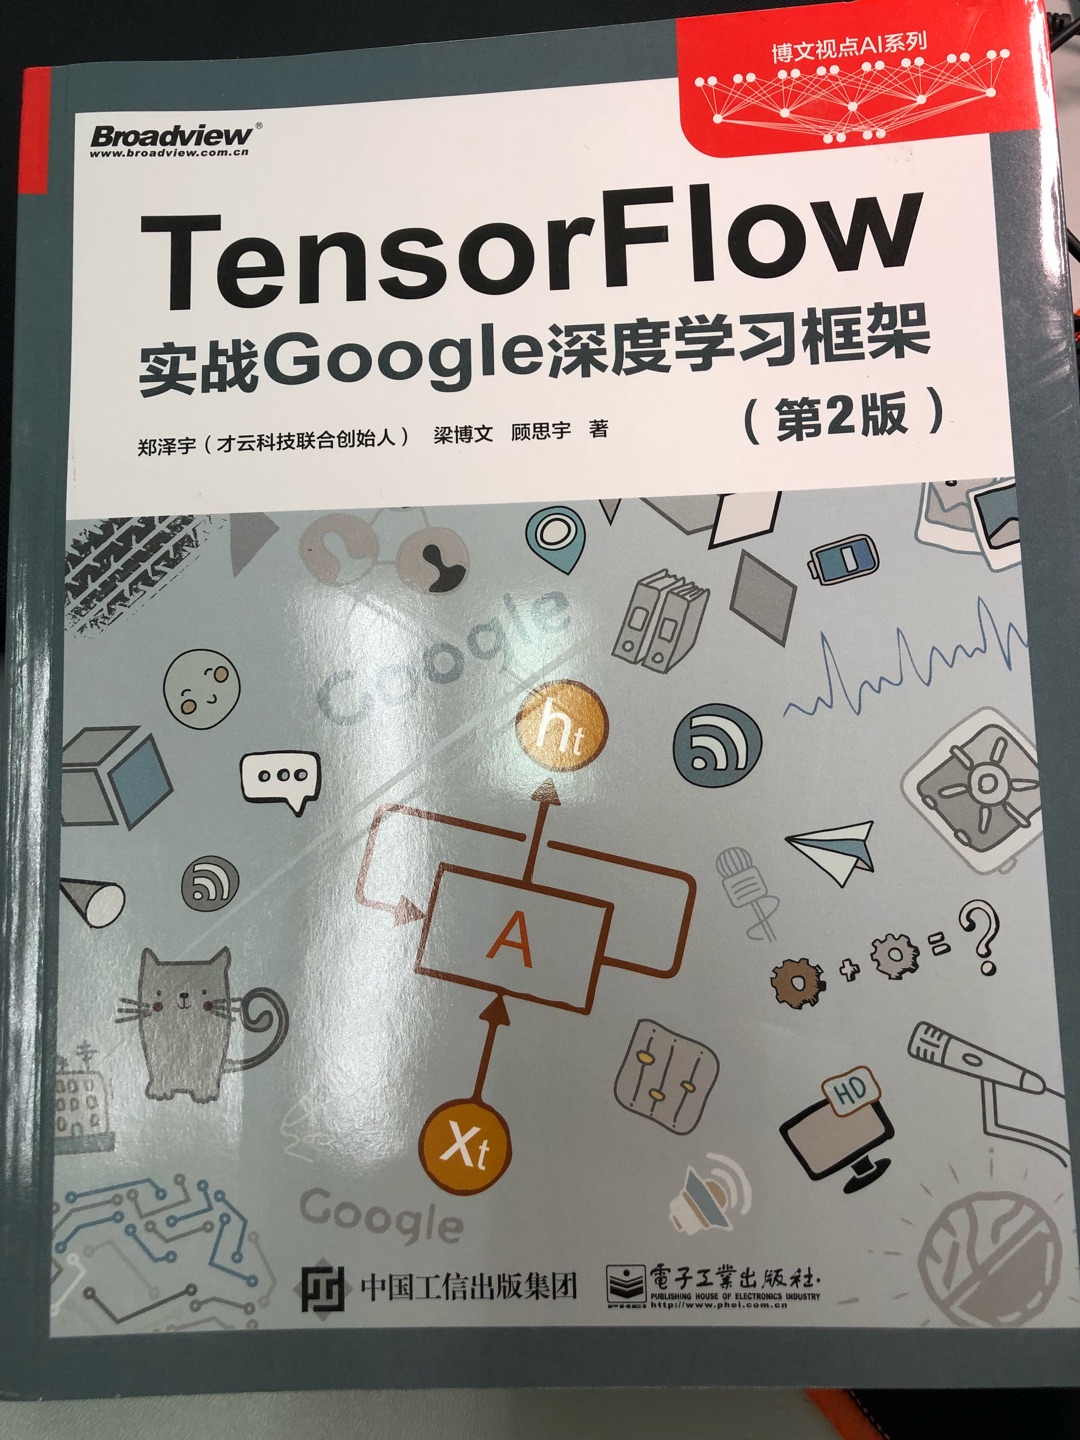 TensorFlow用了快半年，想系统学习下，就买了这本。质量不错，跟想象中差不多。